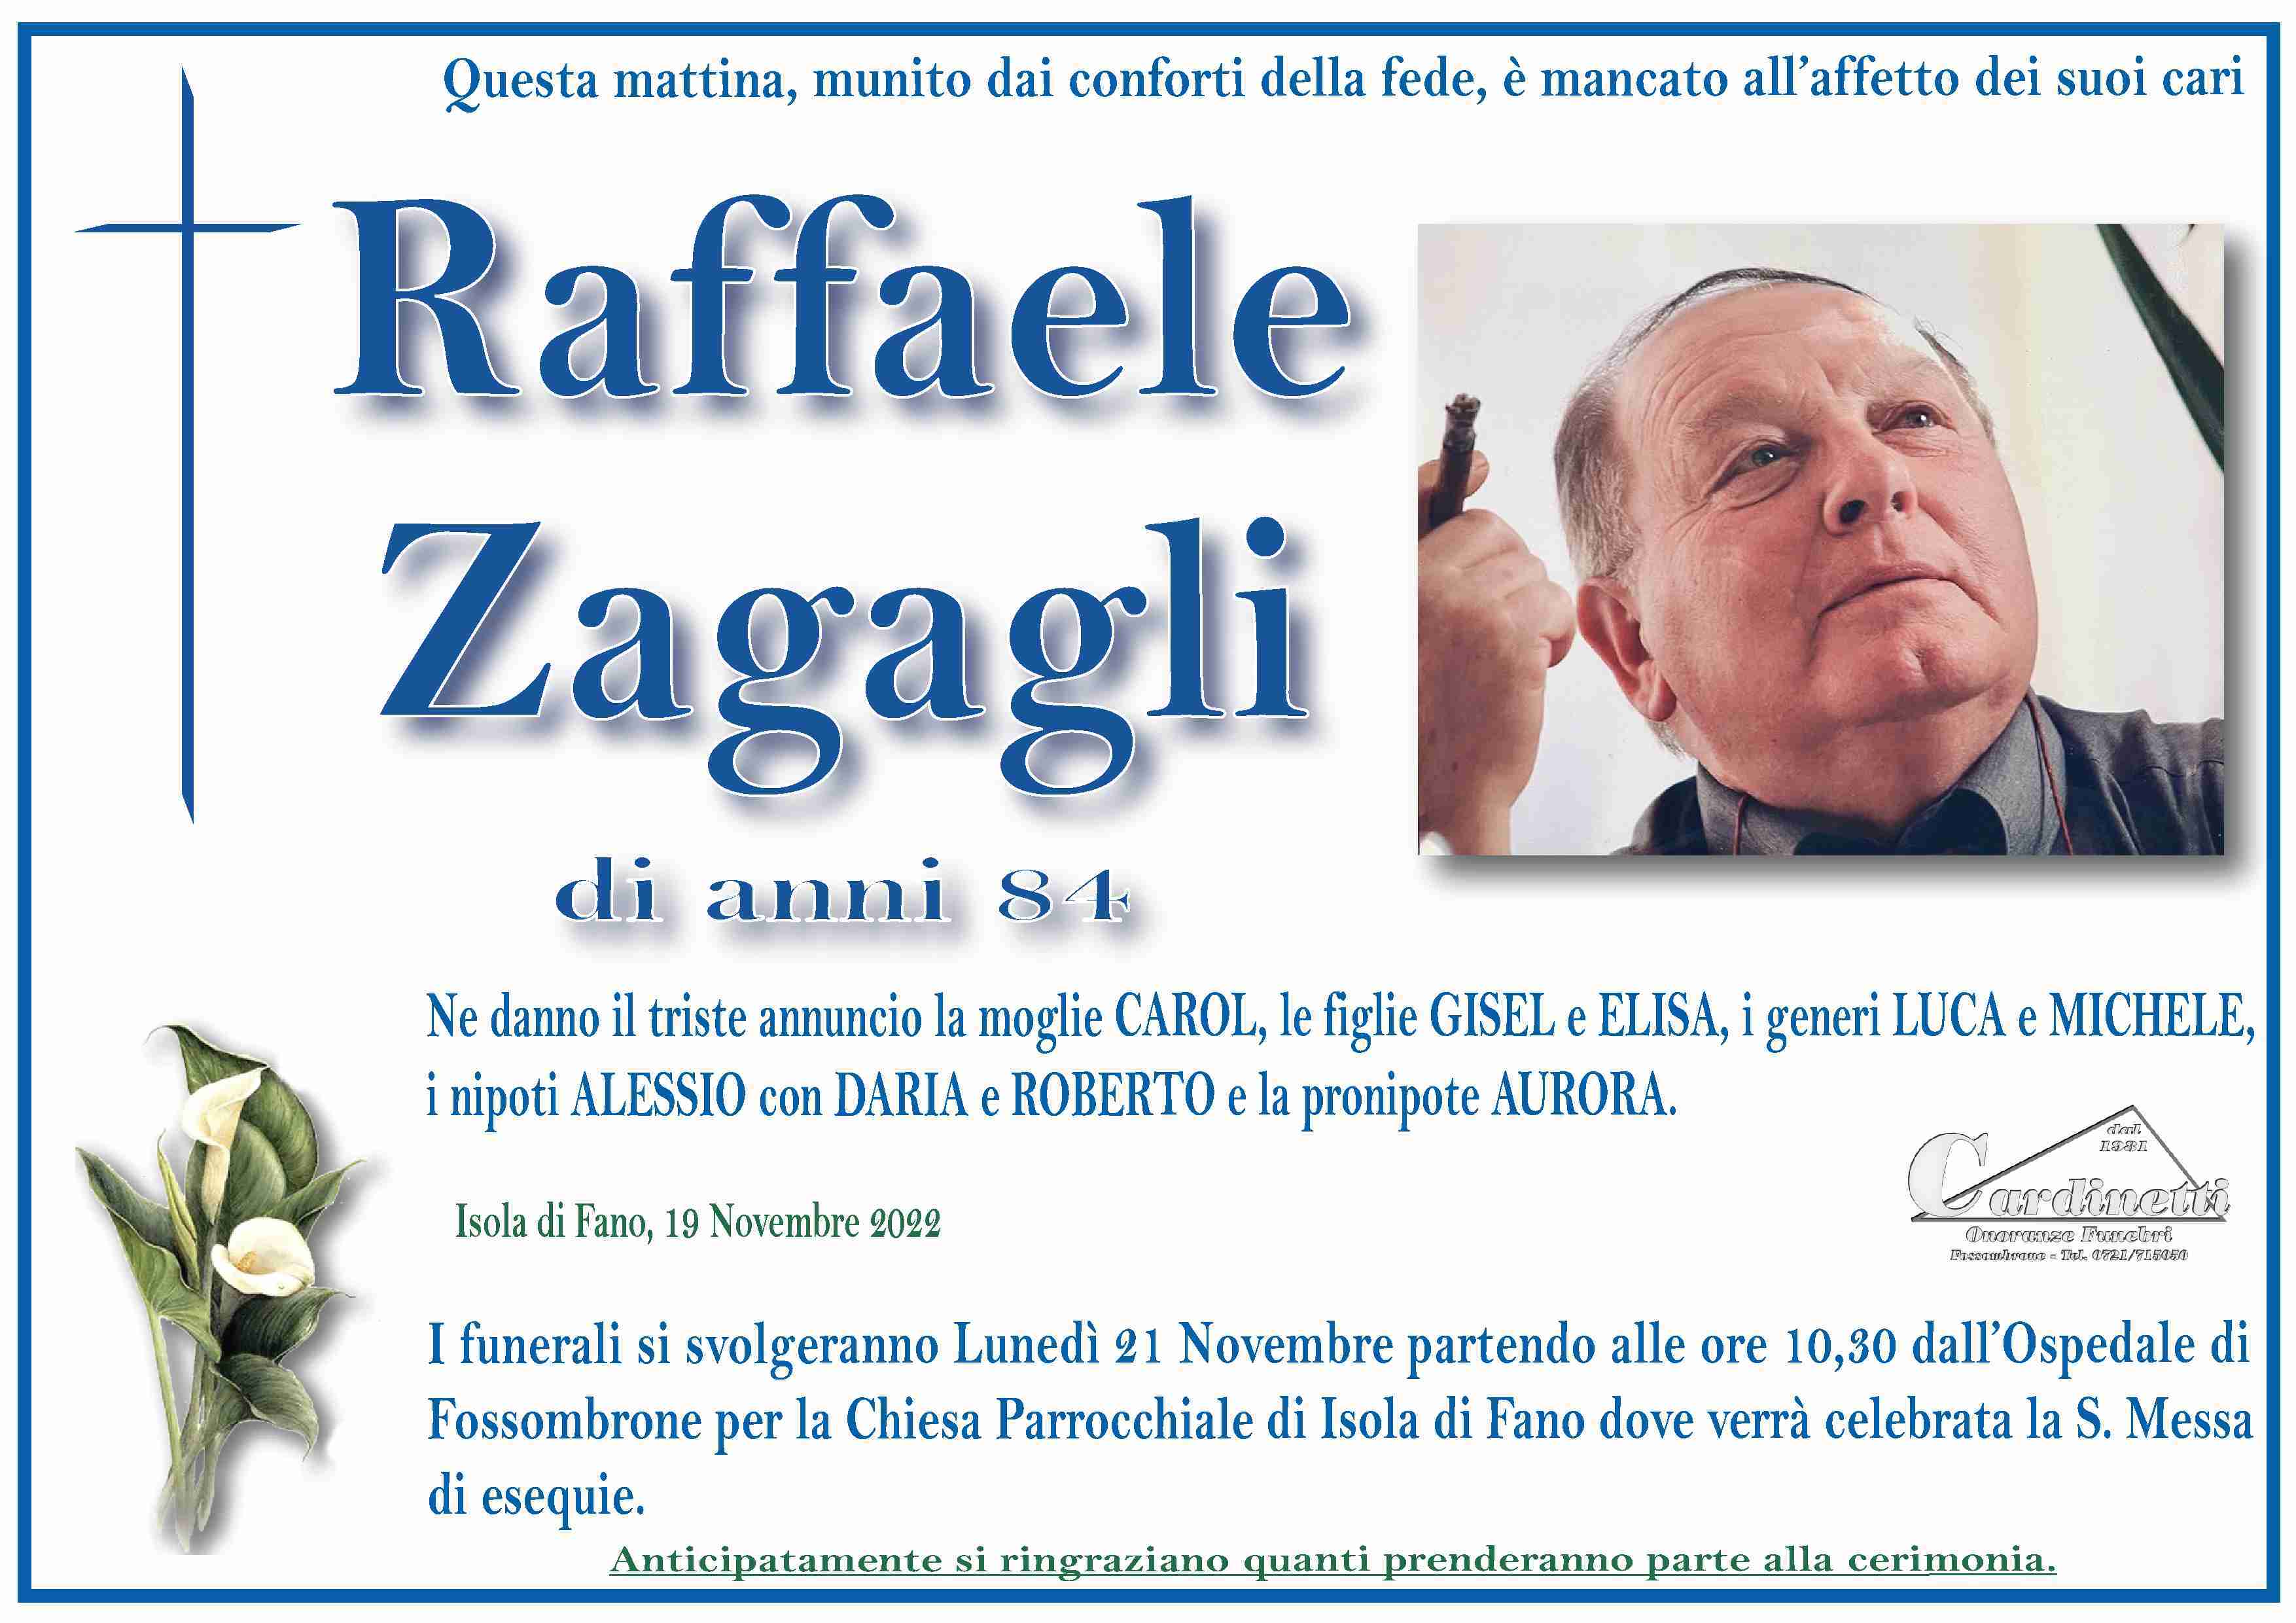 Raffaele Zagagli